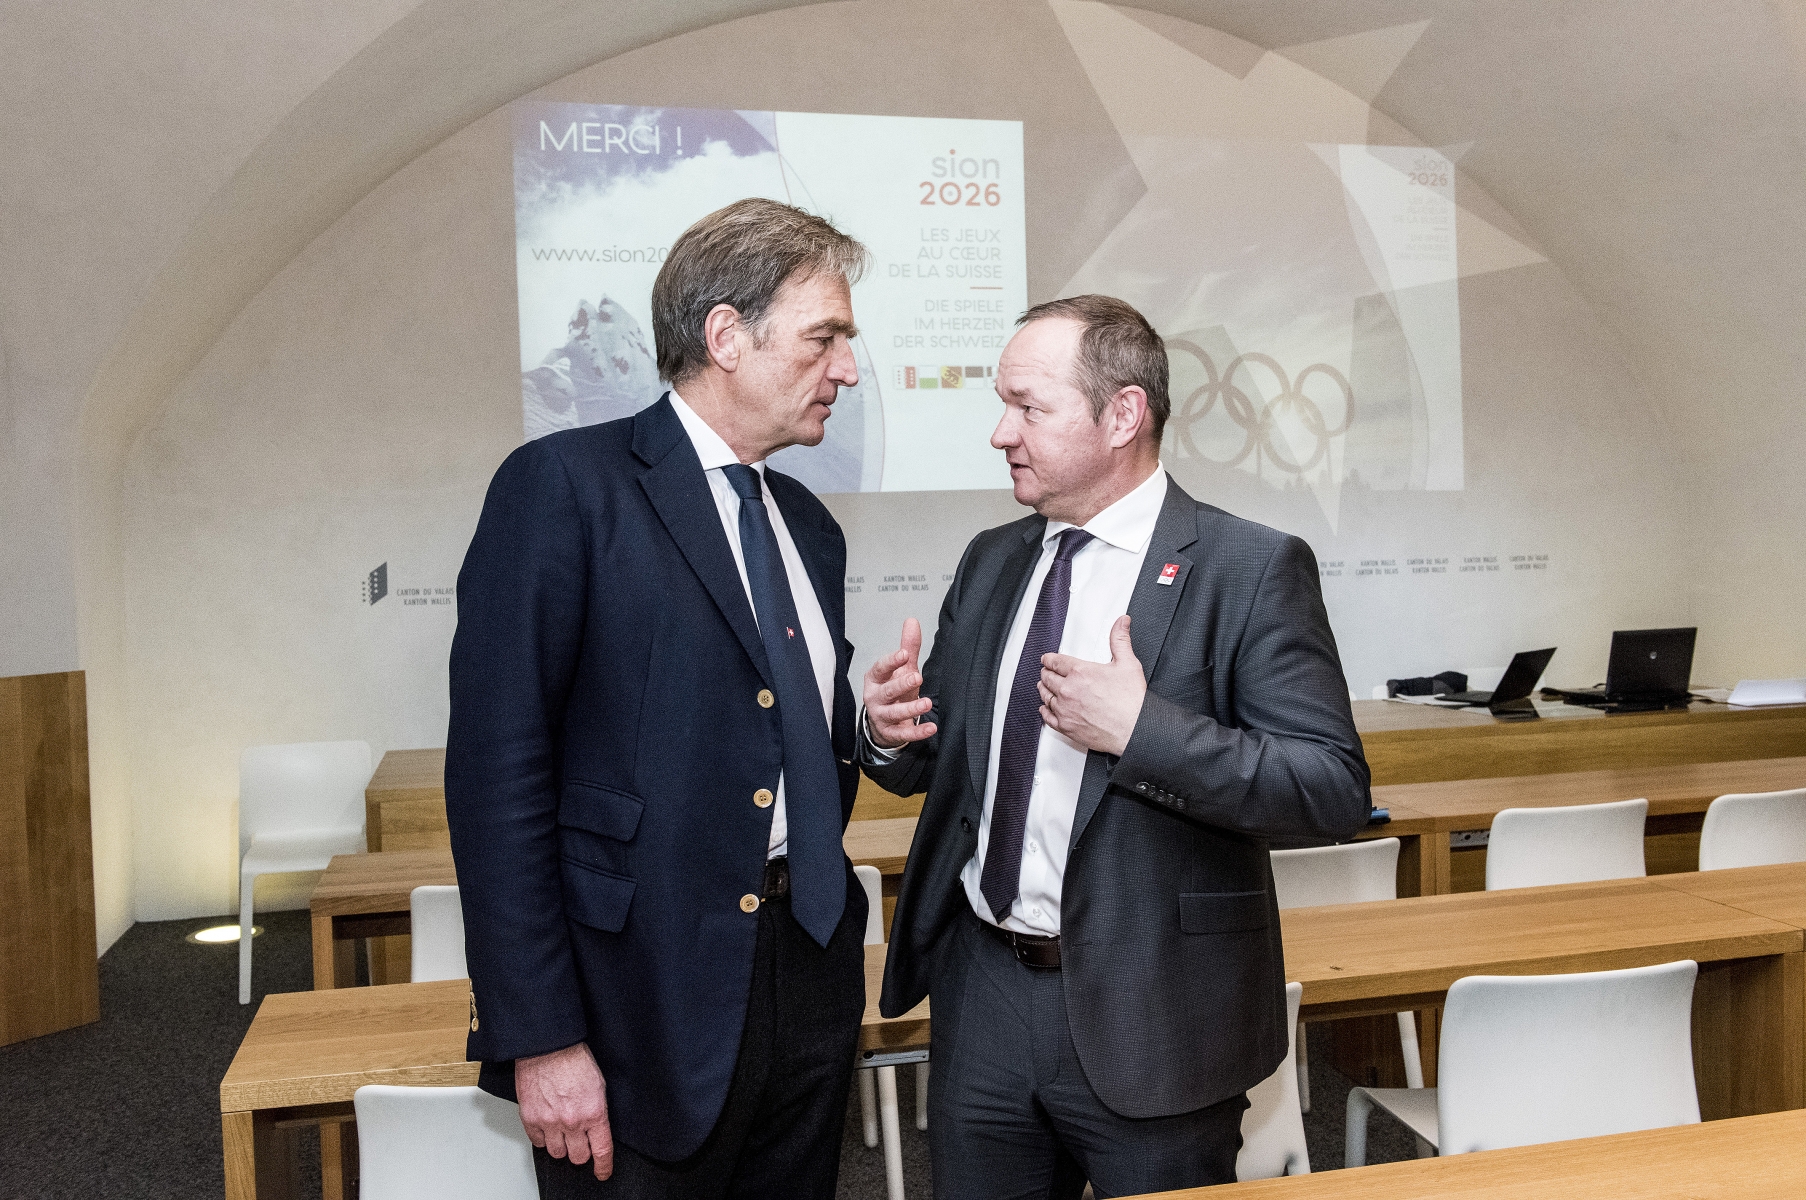 La task-force de Swiss Olympic dirigée par Jürg Stahl (à droite), président de Swiss Olympic et du Conseil national, a rencontré les acteurs de Sion 2026, ici le président Jean-Philippe Rochat.